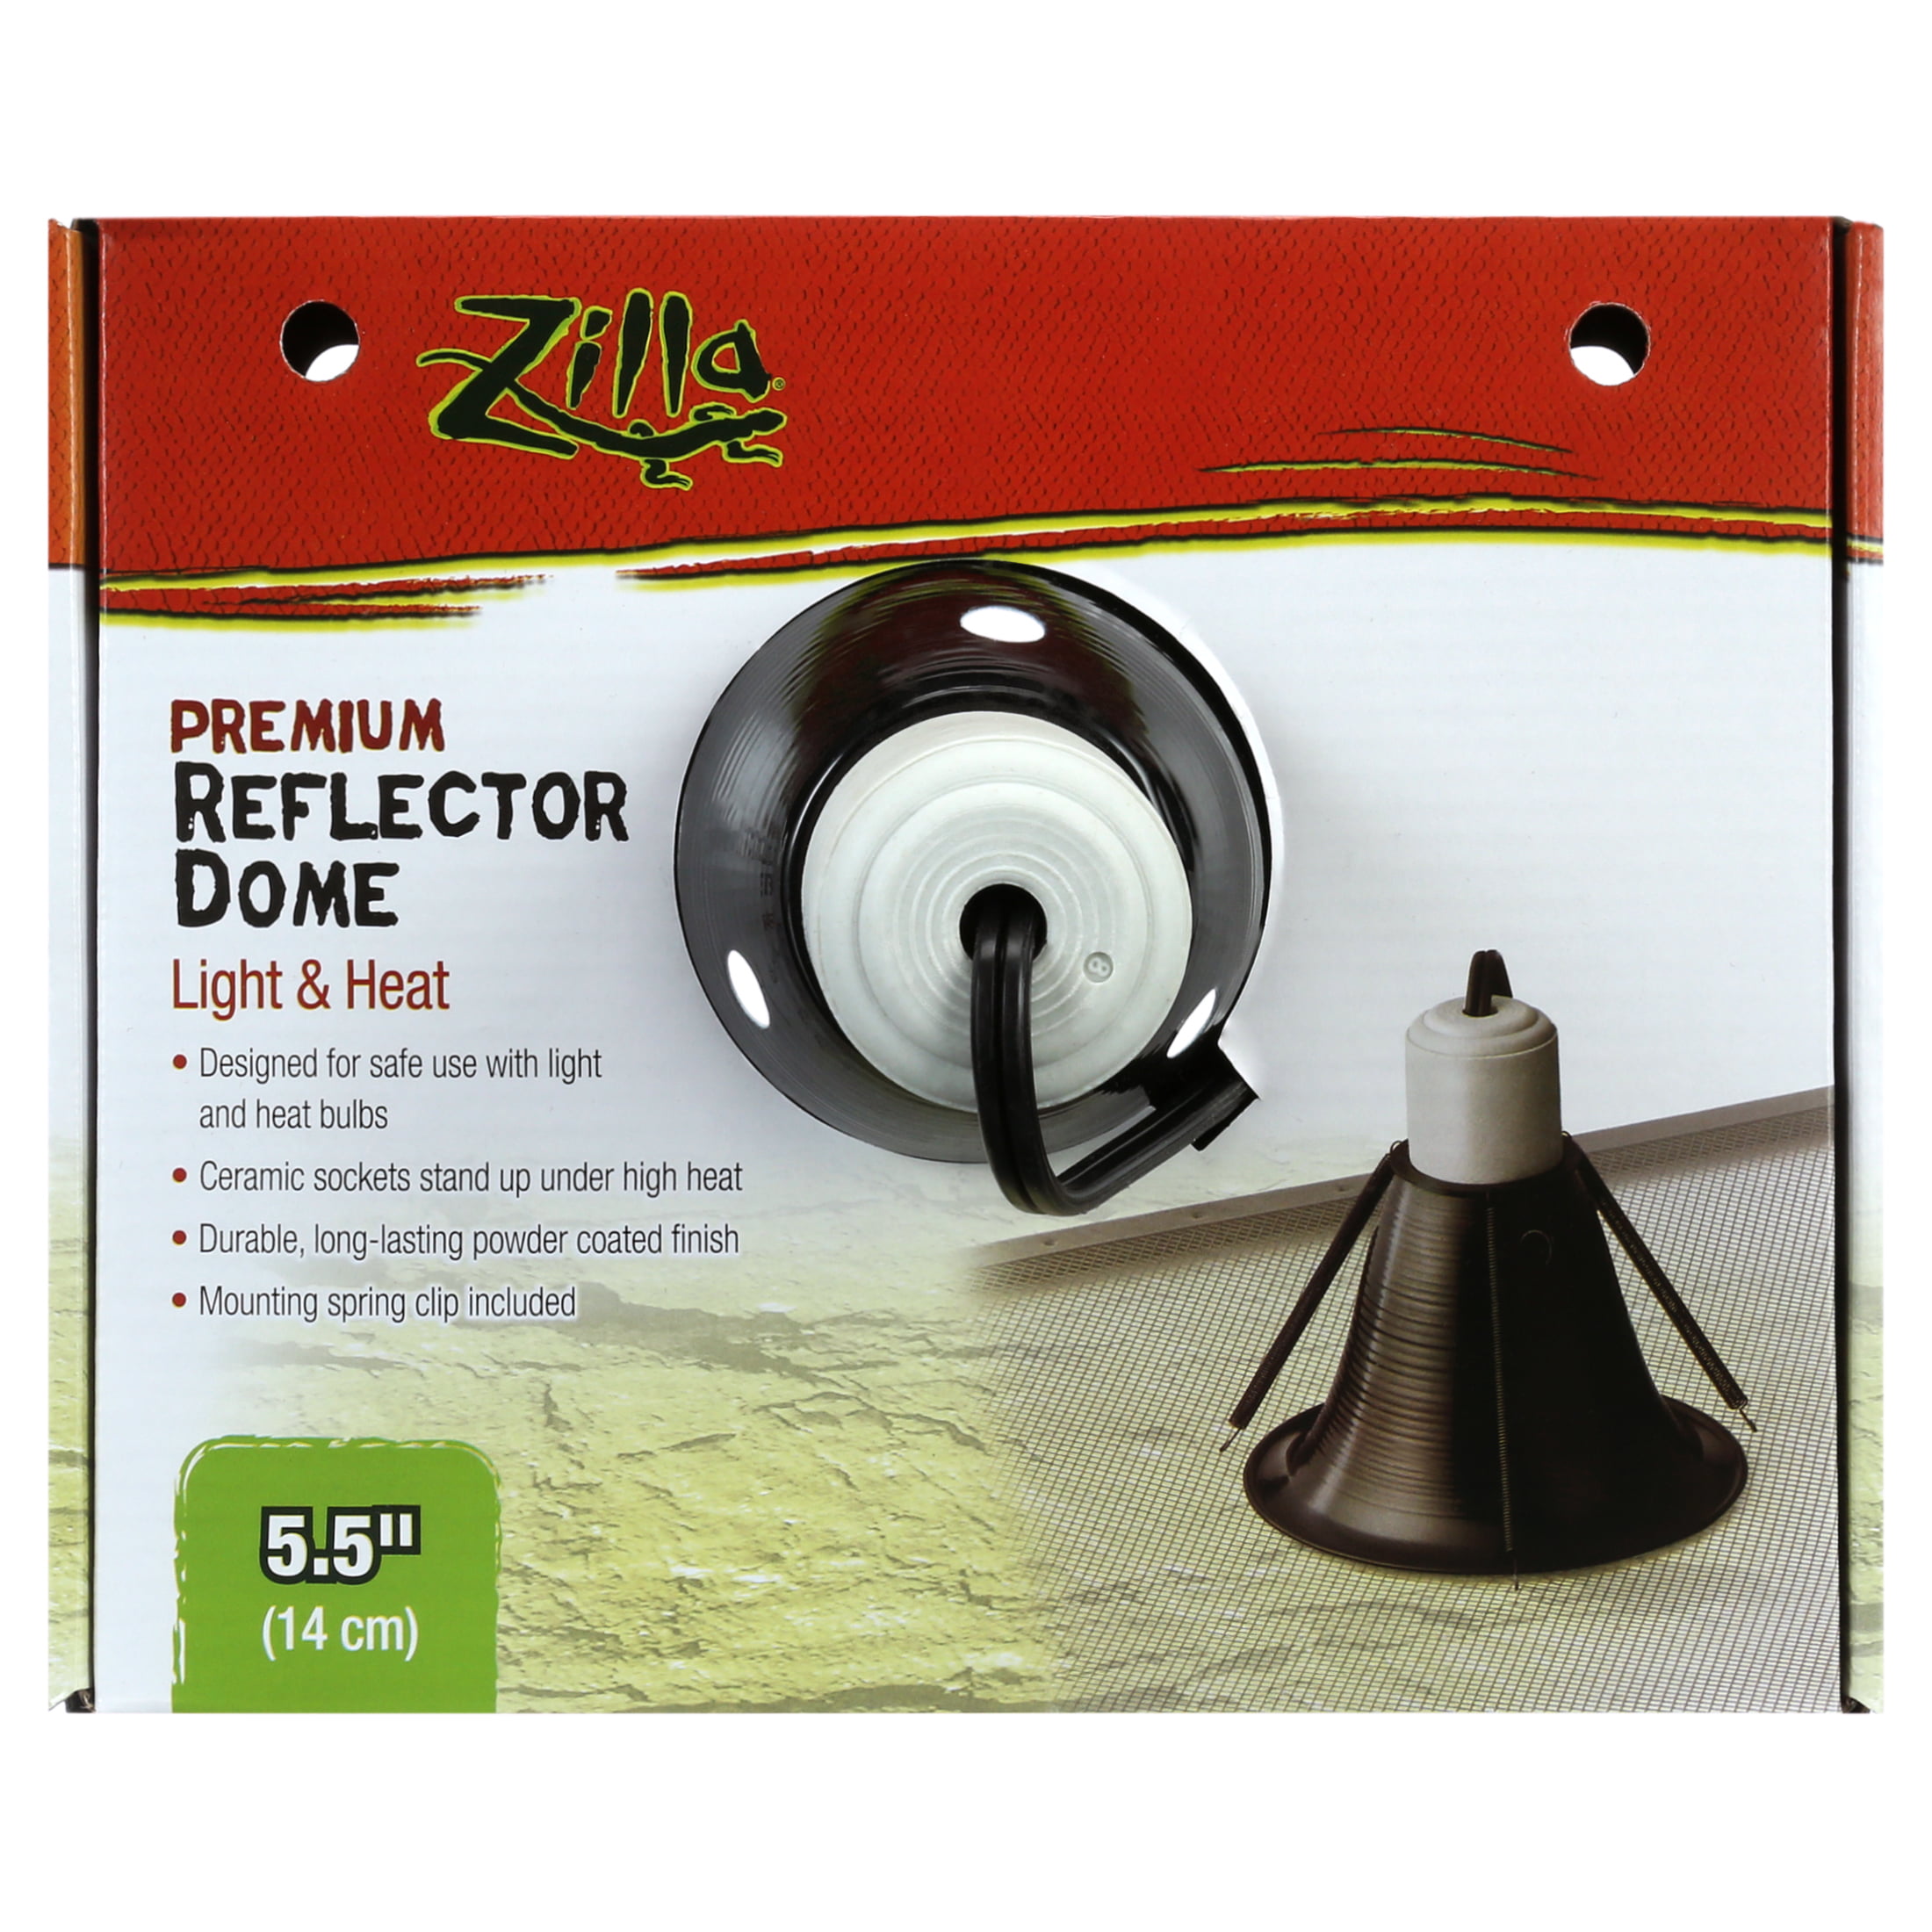 Zilla Premium Reflector Dome 